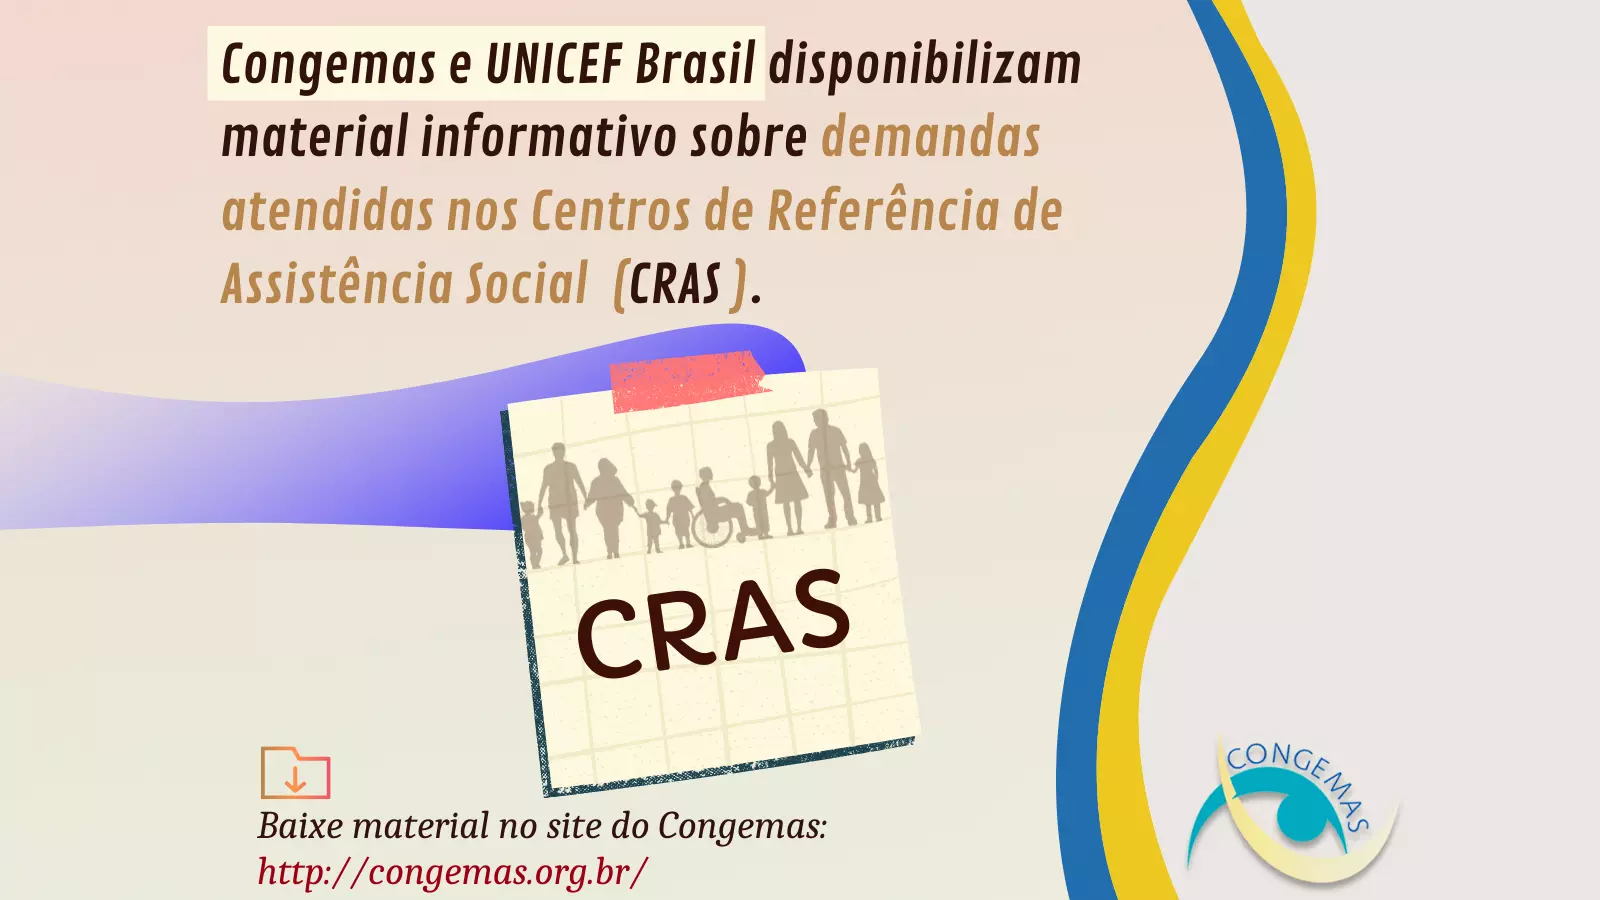 Congemas e UNICEF Brasil disponibilizam material informativo sobre demandas dos CRAS